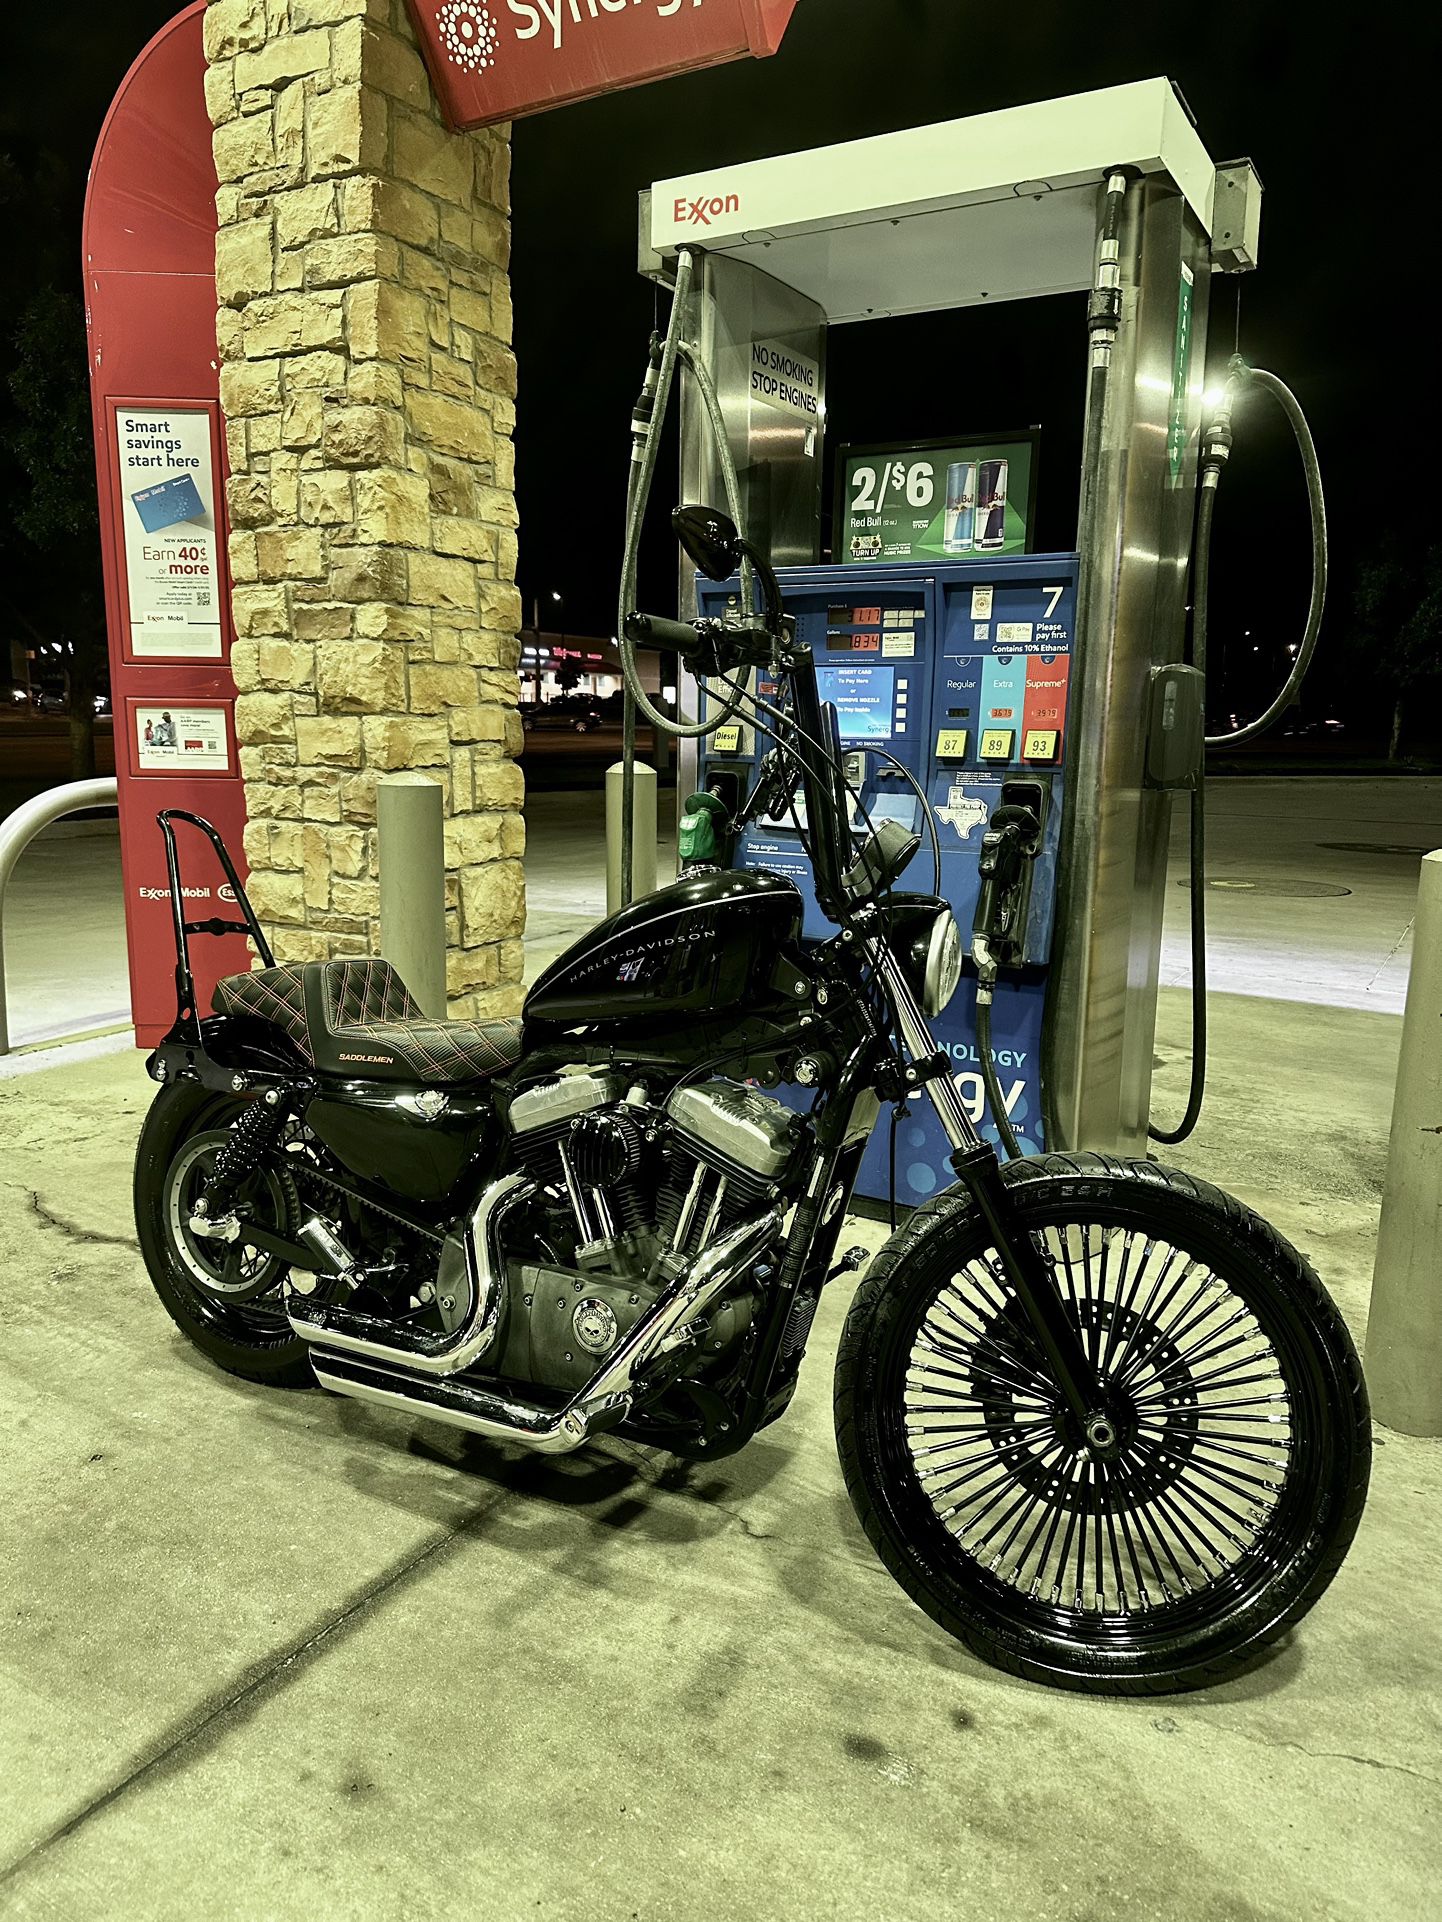 2008 Harley Davidson XL1200 Nightster